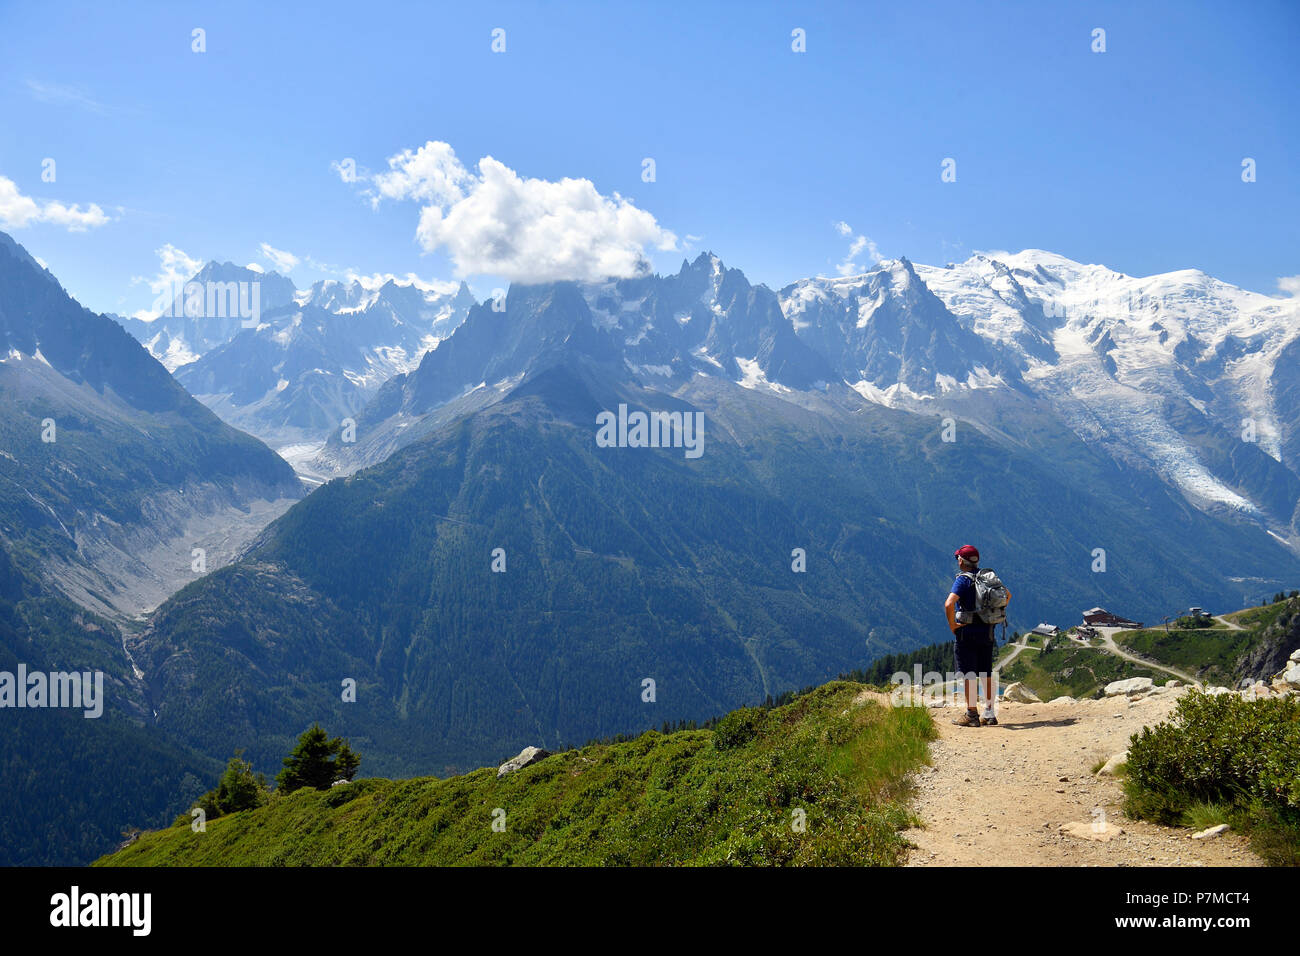 France, Haute Savoie, Chamonix Mont Blanc, randonnée pédestre vers le lac Blanc (White Lake) (2352m) dans la réserve naturelle nationale des Aiguilles Rouges (réserve naturelle des Aiguilles Rouges) avec vue sur le Mont Blanc et le Mont Blanc (4810m) Banque D'Images